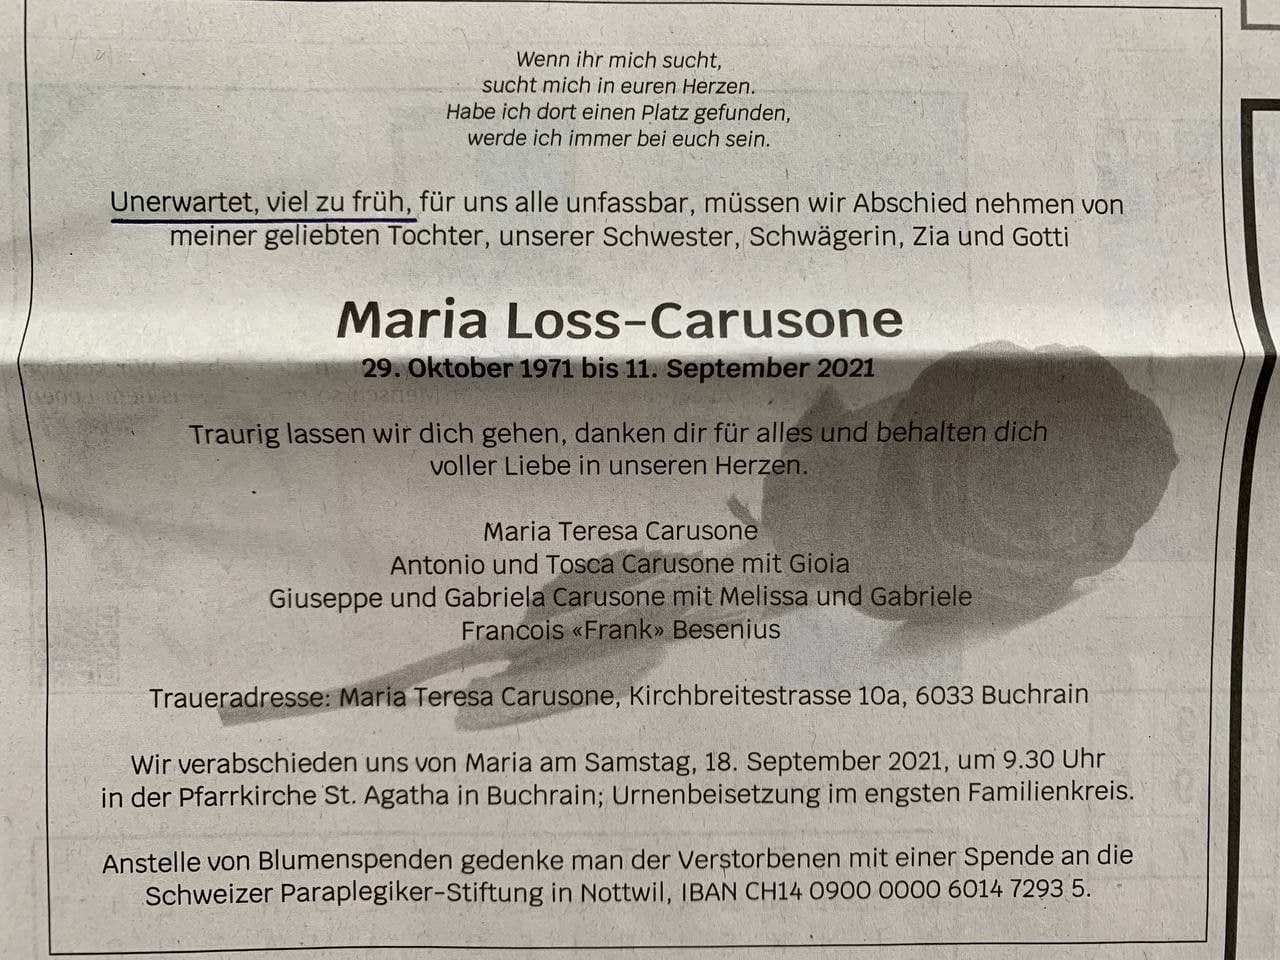 GENimpfmord 15.9.2021:
                    Todesanzeige Marie Loss 49 Jahre alt -
                    "unerwartet, viel zu früh" gestorben